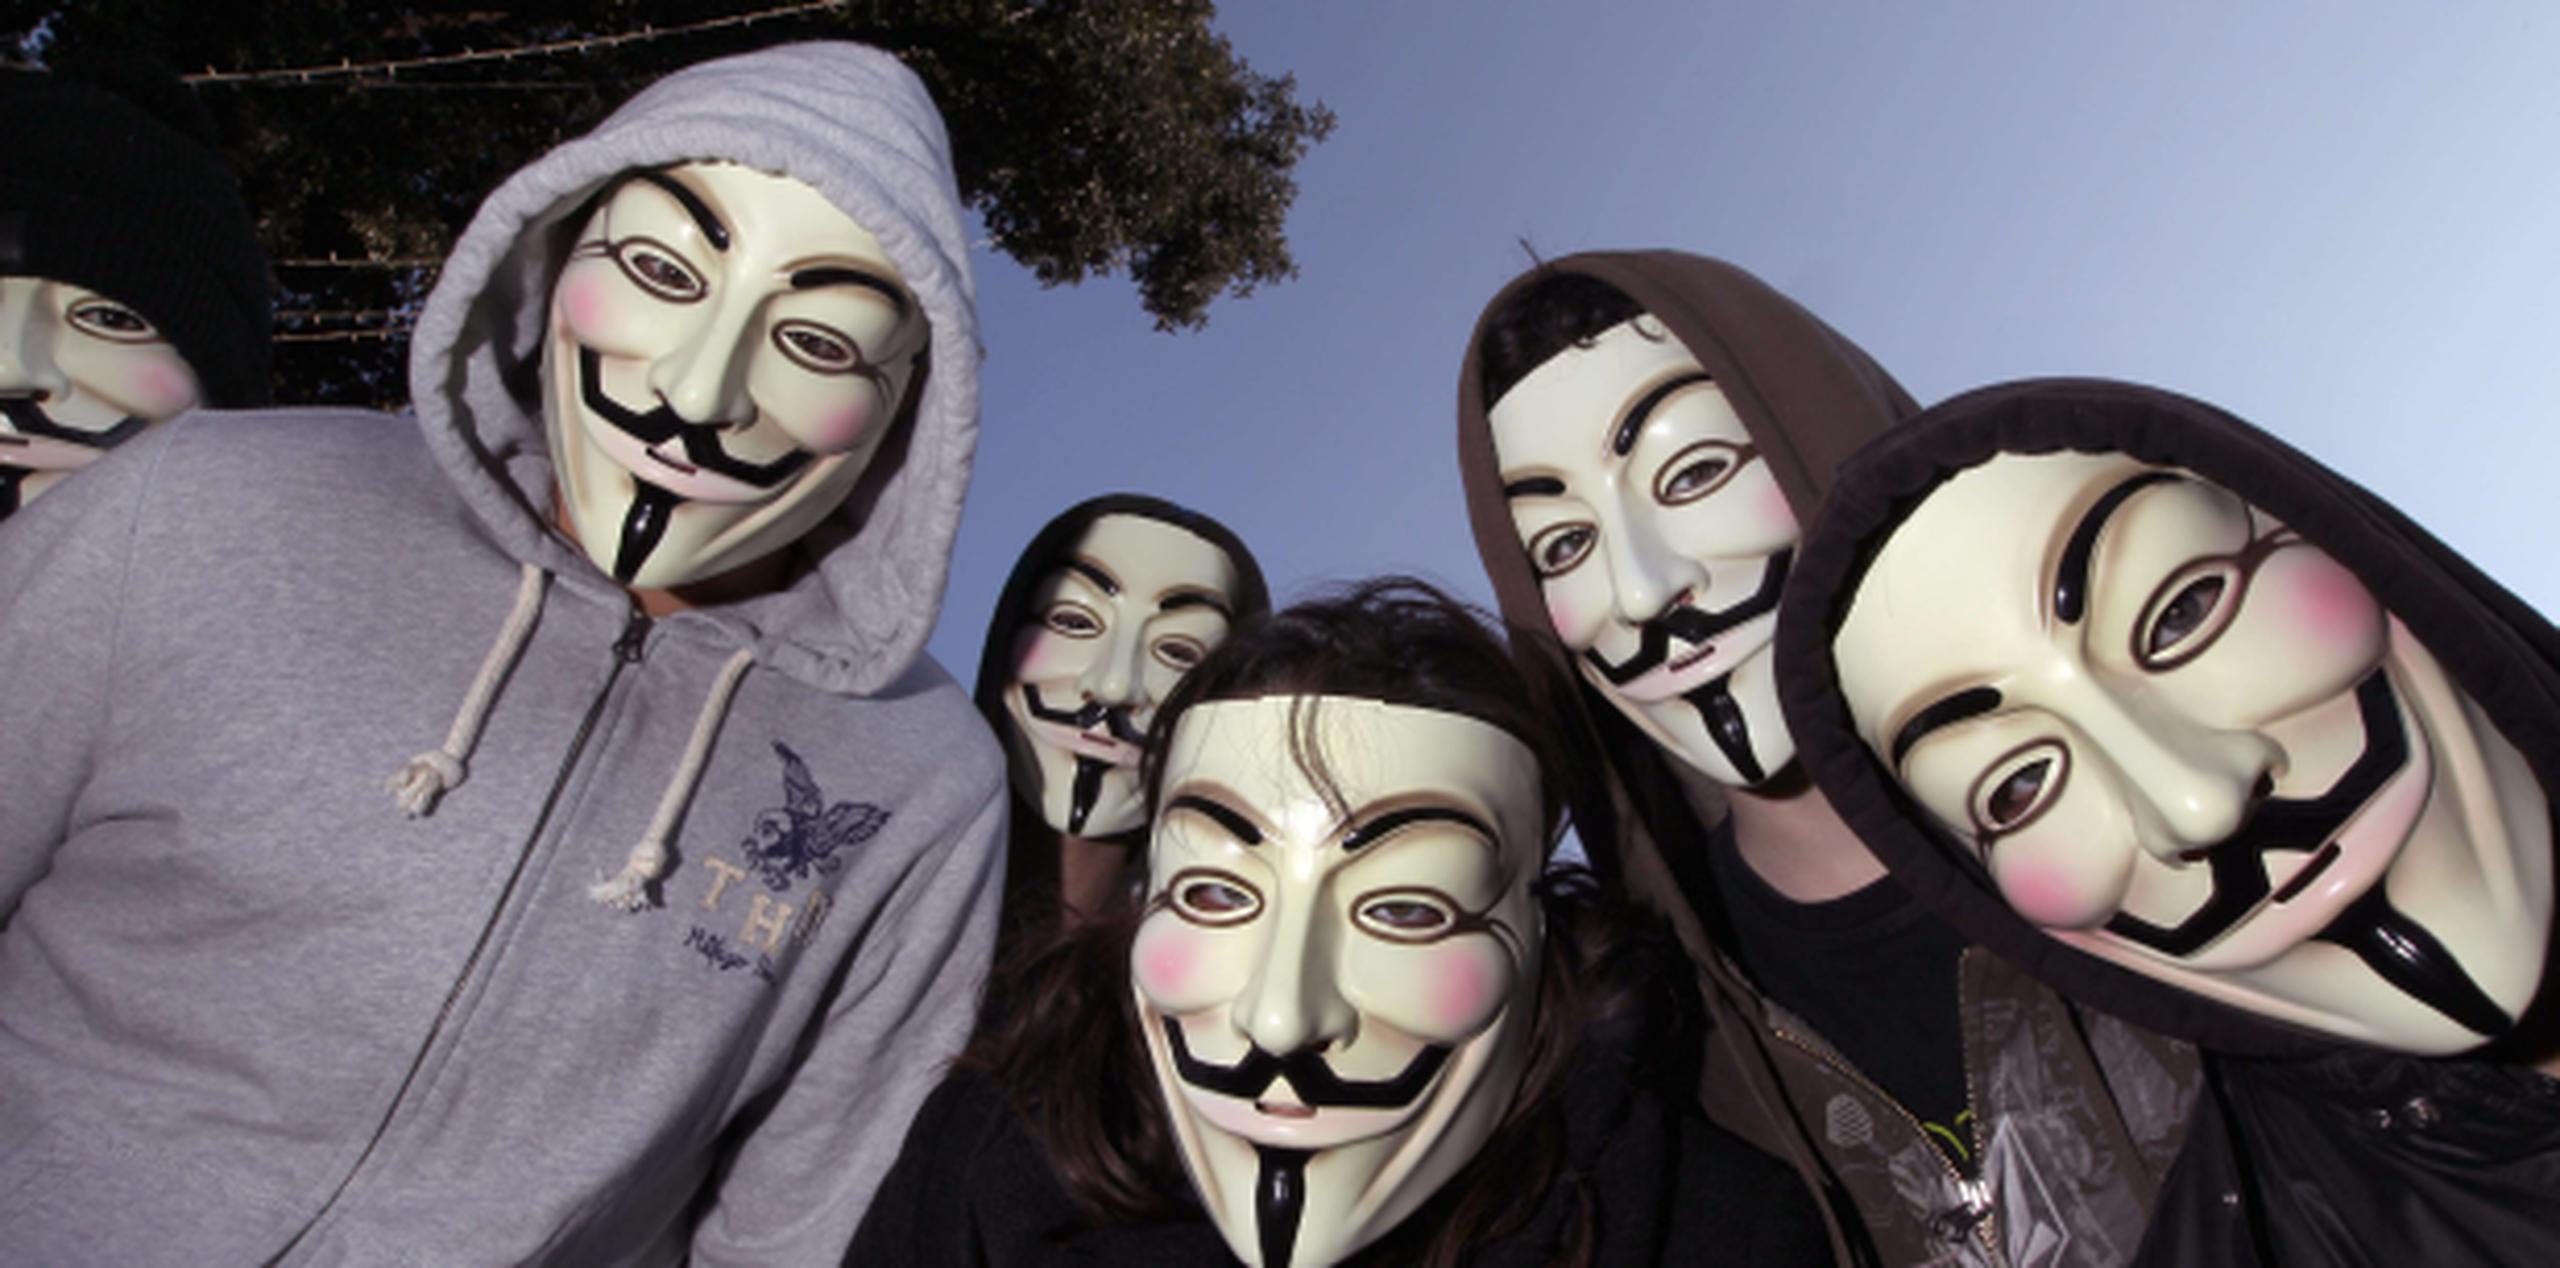 El grupo Anonymous ha inhabilitado 14 webs. (Archivo)